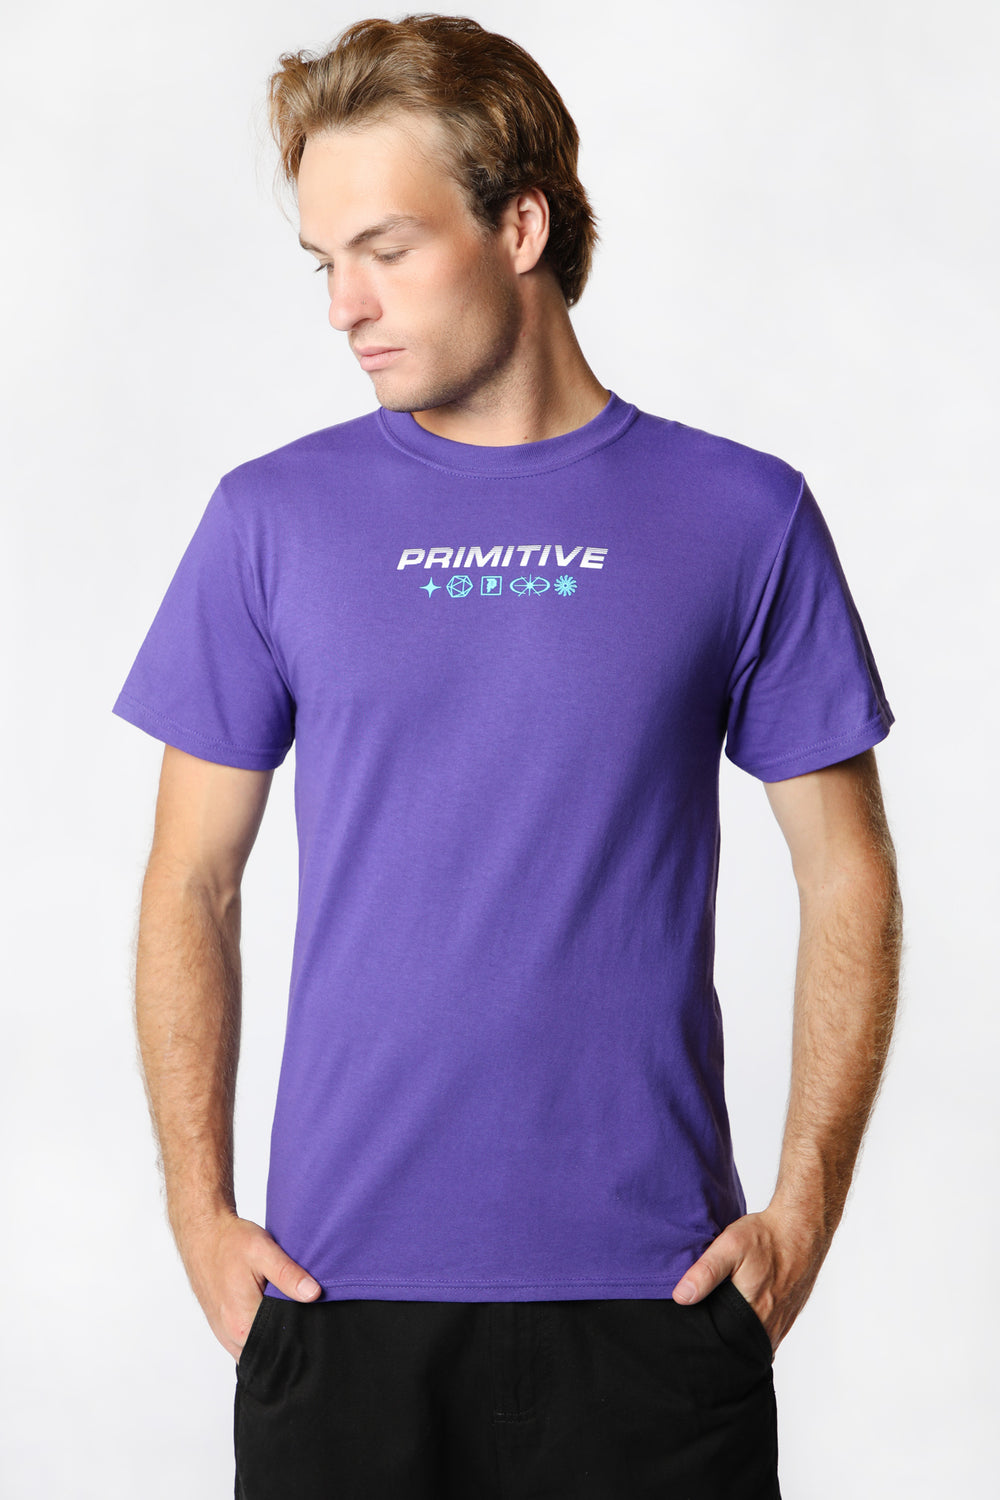 Primitive Zenith T-Shirt Purple